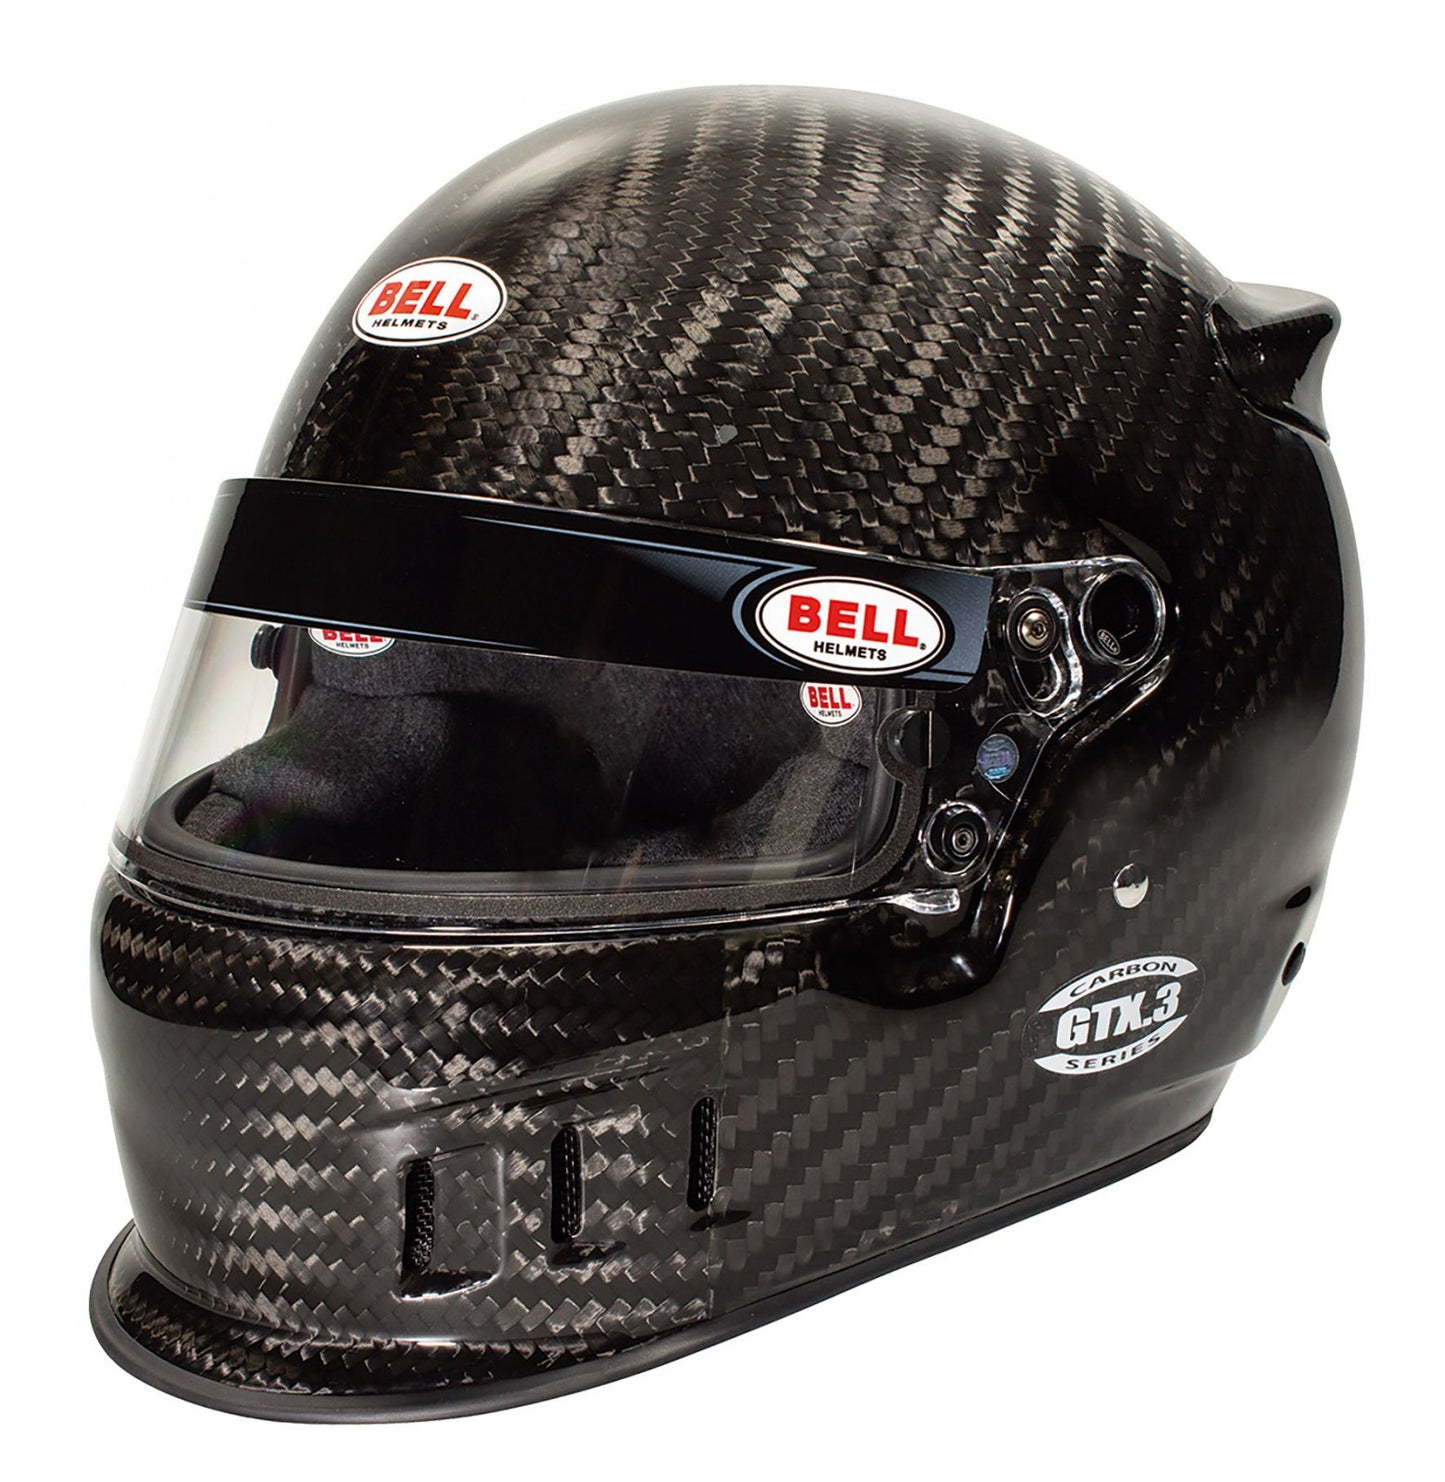 Bell GTX.3 Carbon Racing Helmet - 60 cm